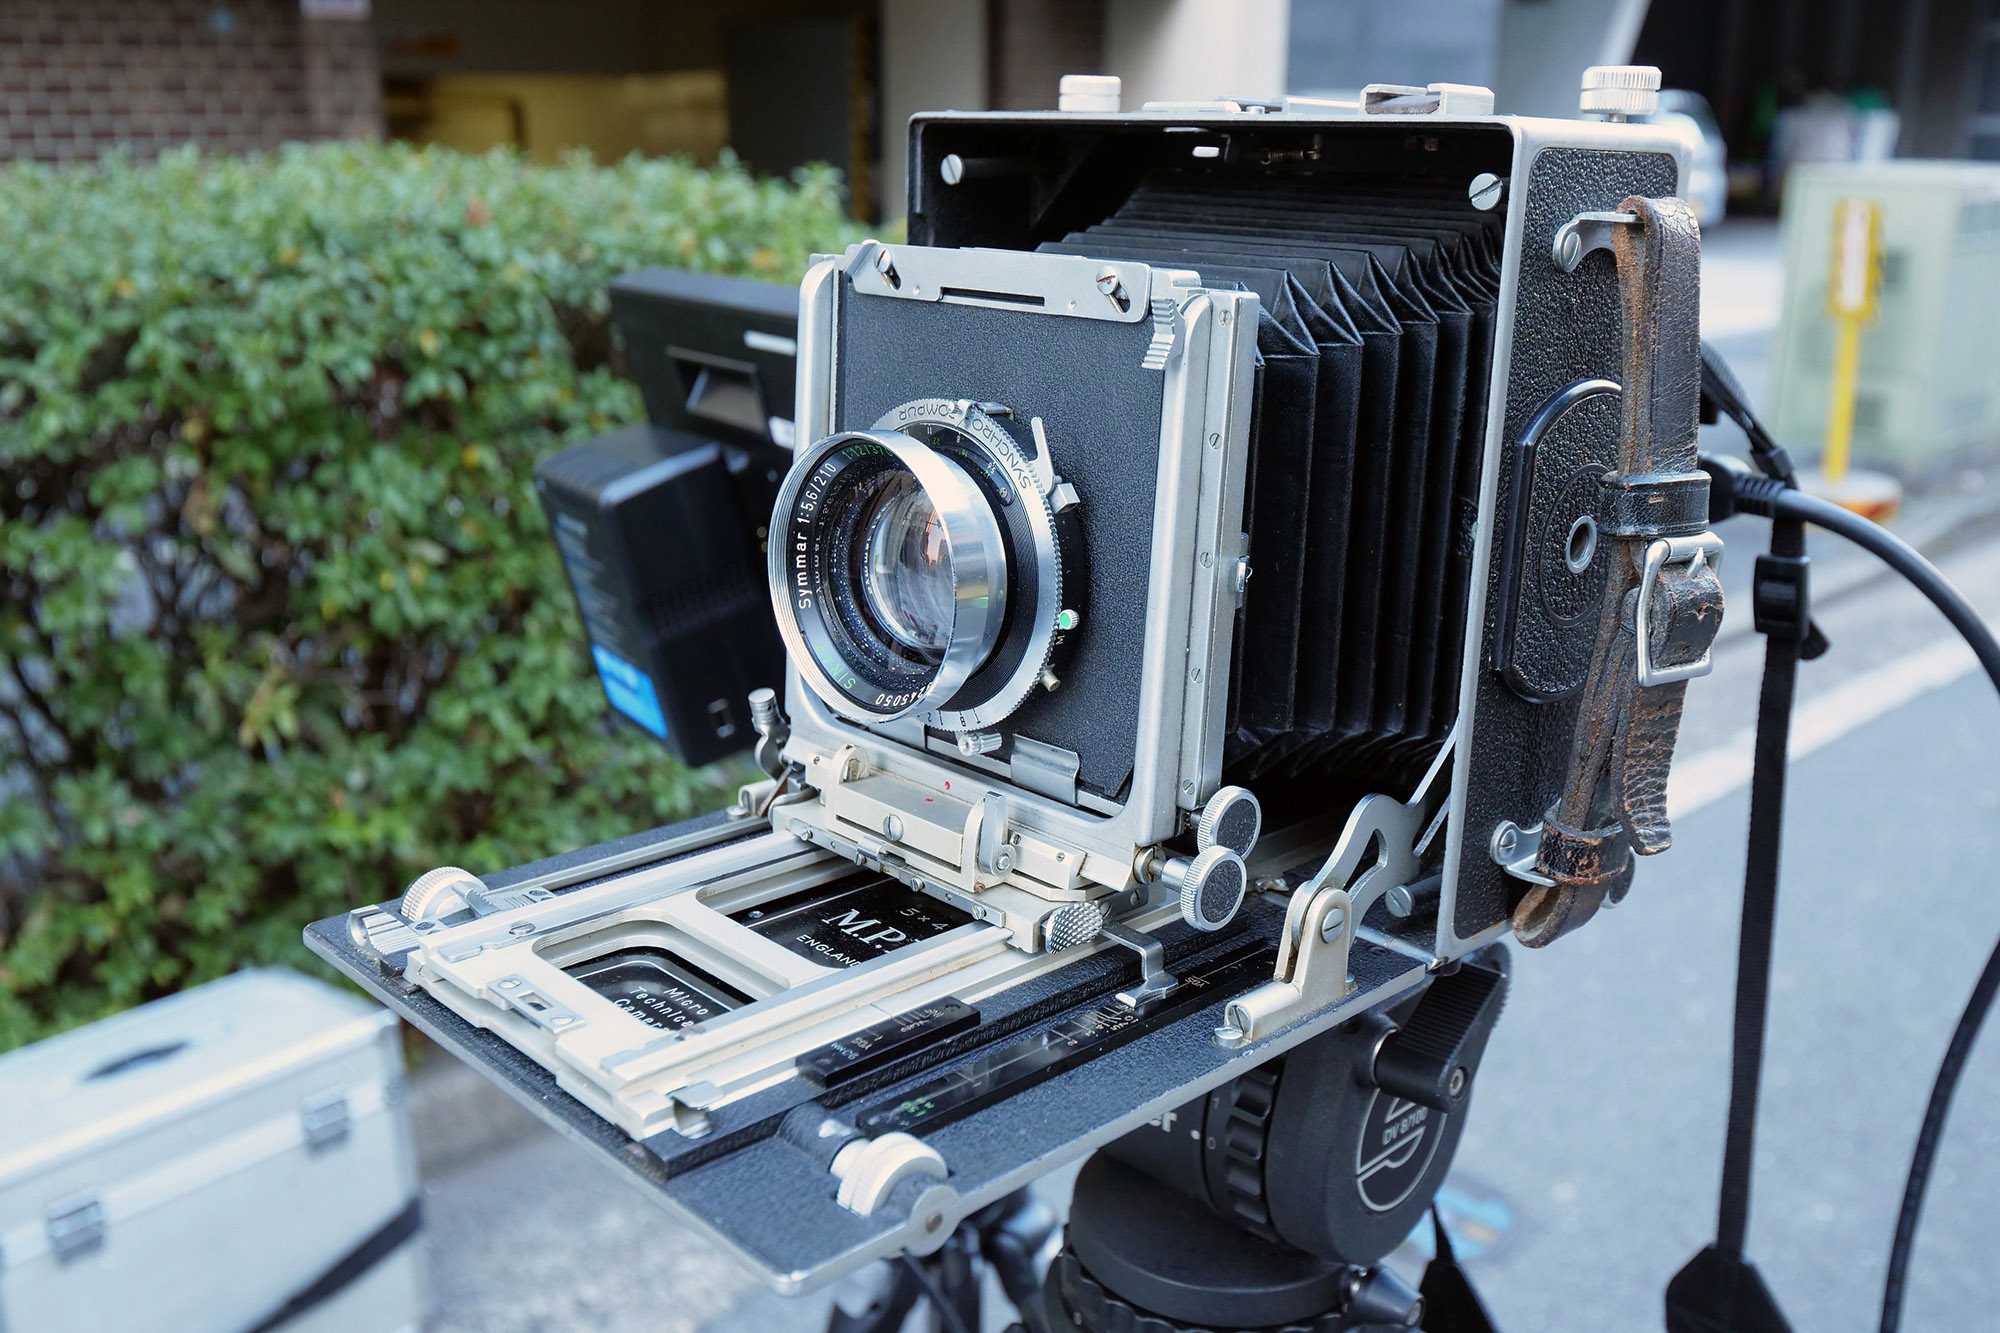 カメラ富士Fujifilm GFX 50Sマウントアダプター 4x5大判カメラ用